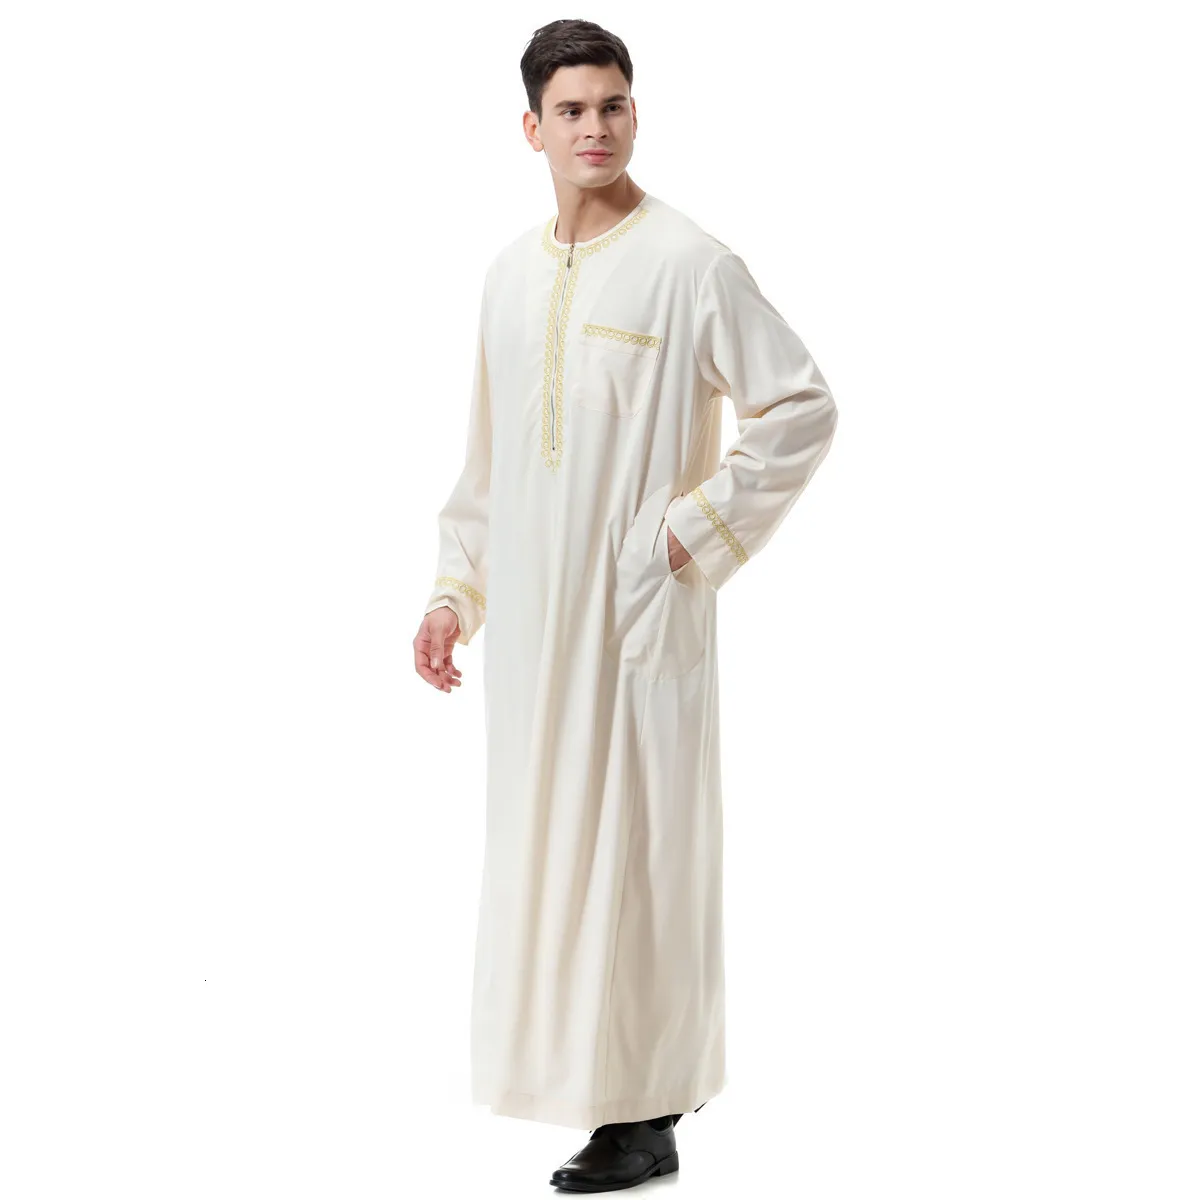 Odzież Ethic Ubranie z długim rękawem Aman Abaya 1cece Jubba Thobe dla mężczyzn Kaftan Pakistan muzułmański Arabia Arabia Djellaba Islam modlitewna szata a